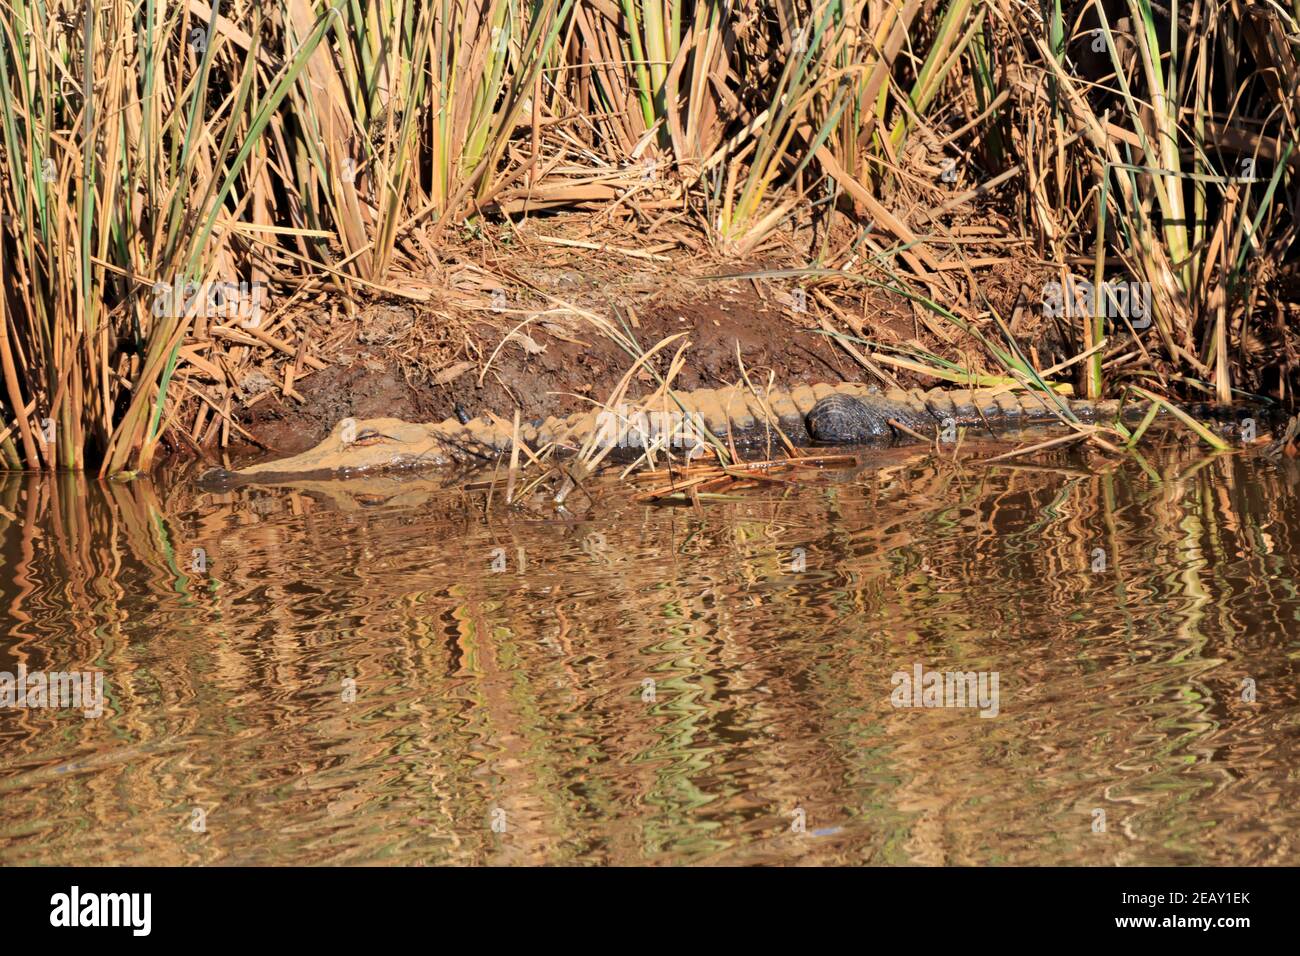 Alligatore americano giovanile (Alligator missispiensis) mezzo sommerso in una banca fangosa Foto Stock